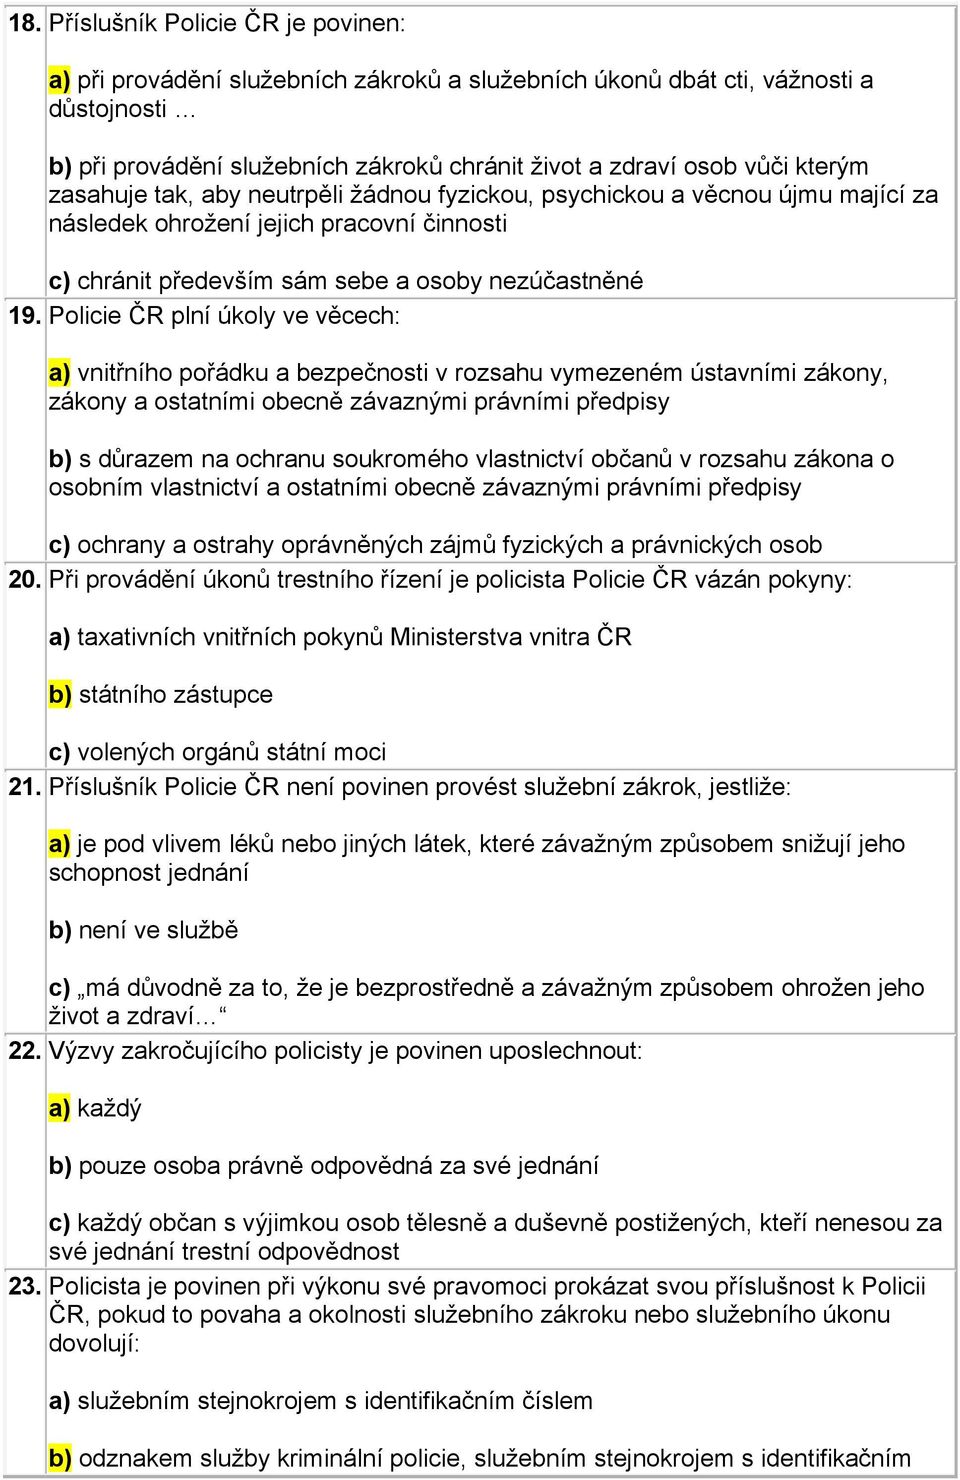 Policie ČR plní úkoly ve věcech: a) vnitřního pořádku a bezpečnosti v rozsahu vymezeném ústavními zákony, zákony a ostatními obecně závaznými právními předpisy b) s důrazem na ochranu soukromého